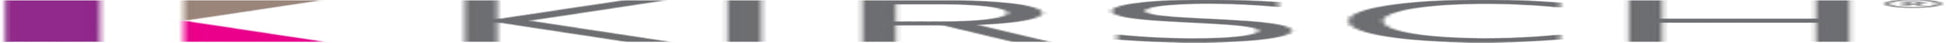 Kirsch Superfine Traverse Rod, Center Draw, 30 - 48 Inch